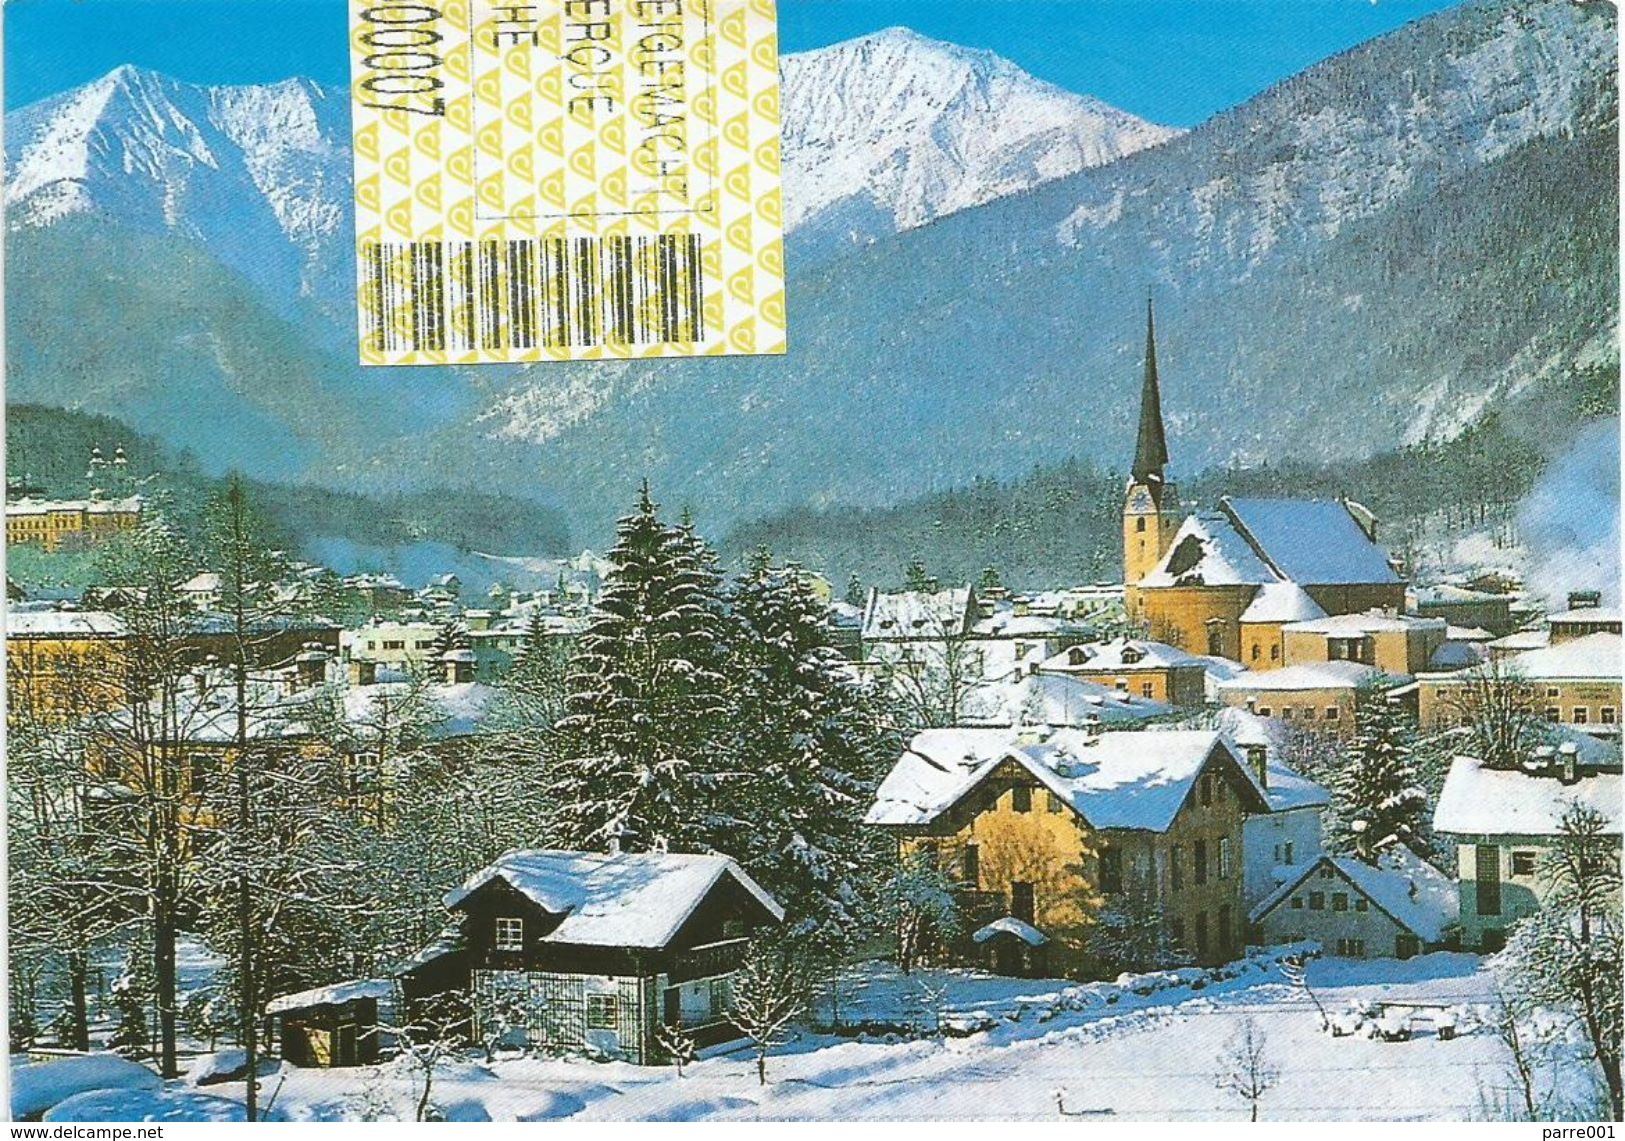 Österreich Austria 2002 Bad Ischl 4820 ID:5 Barcoded EMA Postage Paid Viewcard - Frankeermachines (EMA)